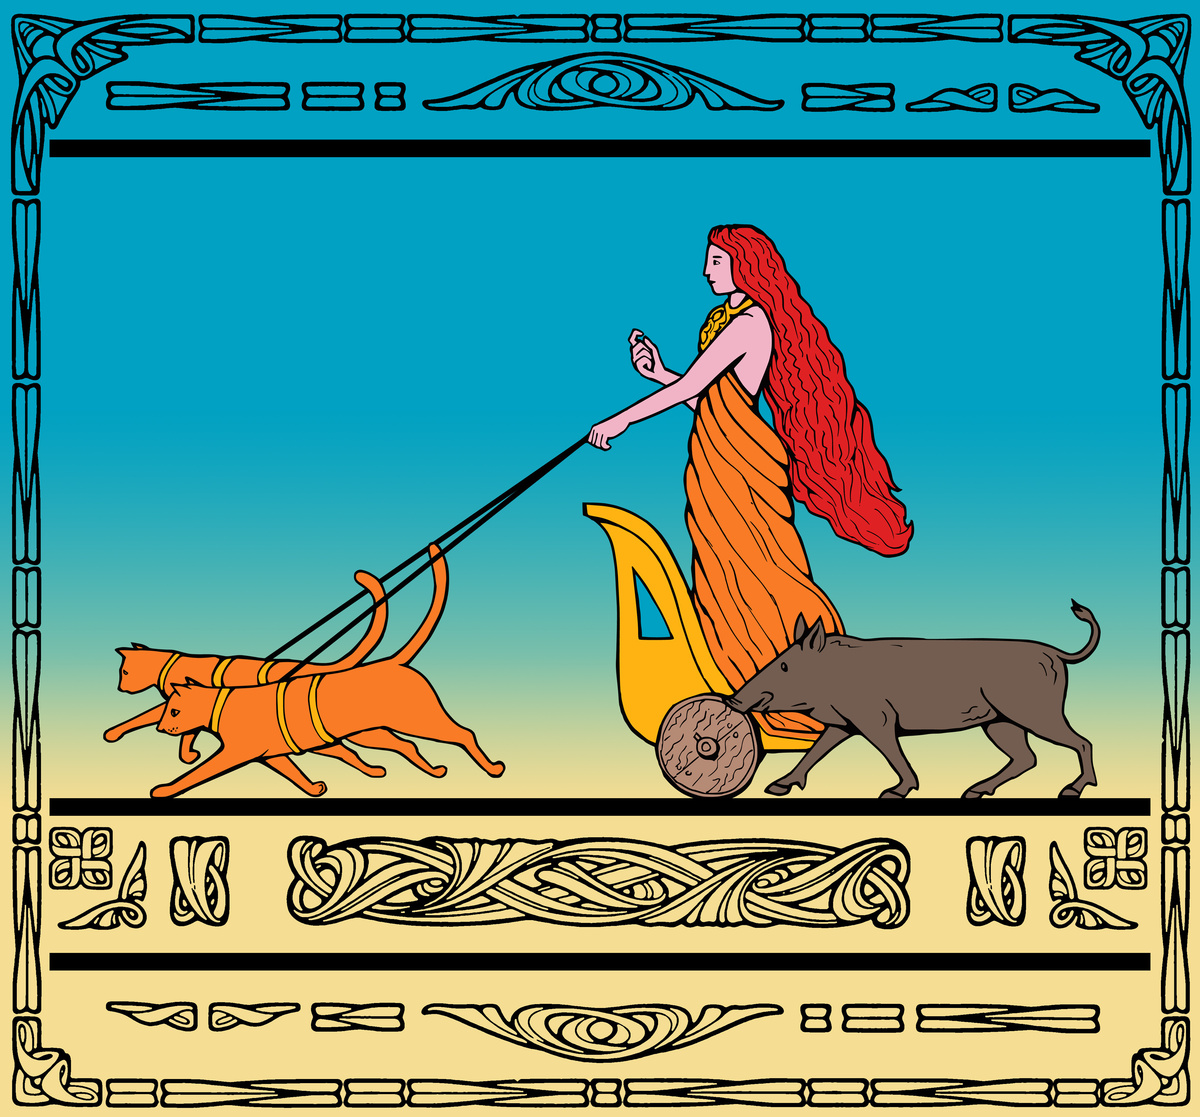 Ilustração colorida da Deusa Freya e seus gatos selvagens.